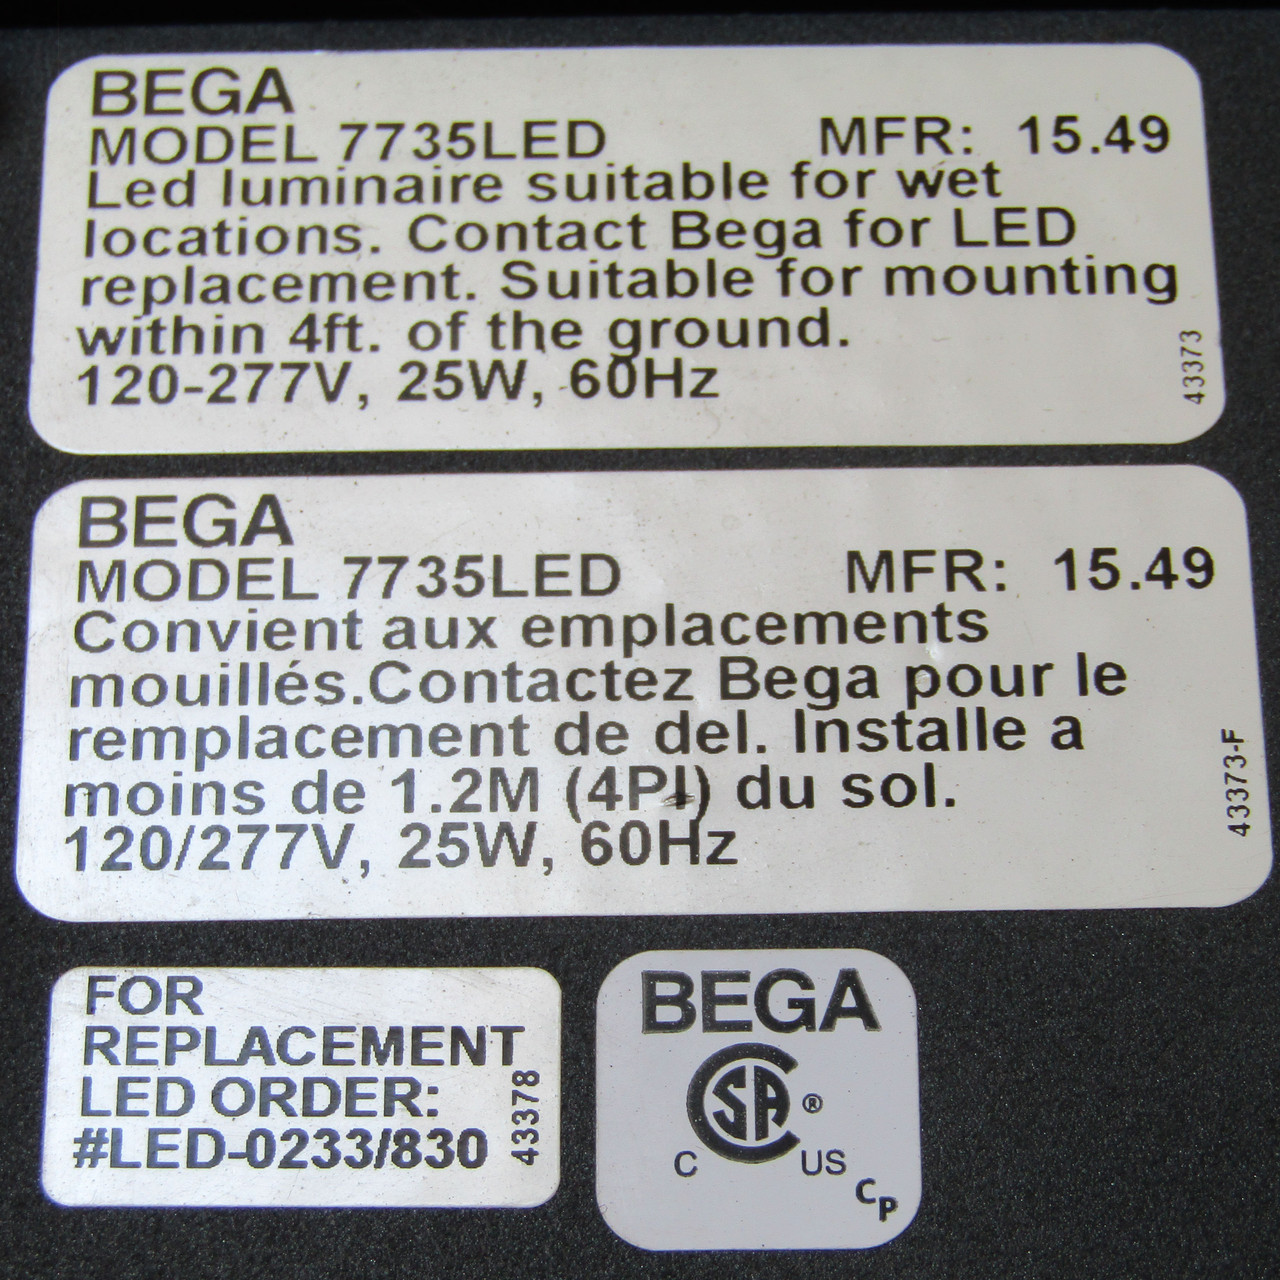 BEGA 7735LED Surface Mount On The Ground Luminaire, 25 Watt, 120-277V 60Hz - New